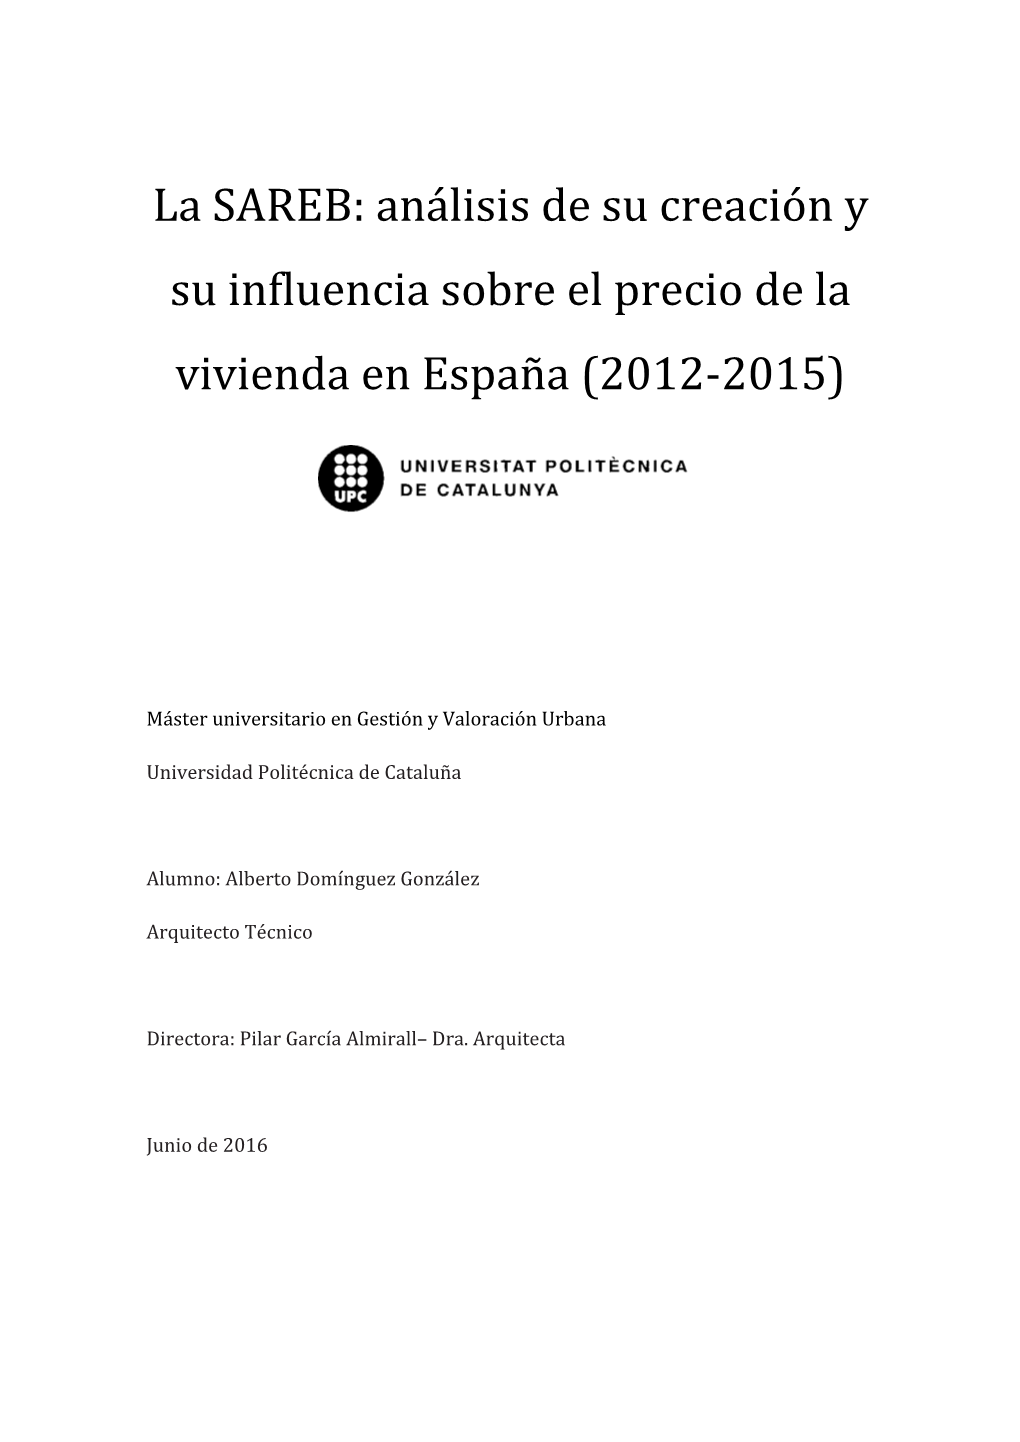 La SAREB: Análisis De Su Creación Y Su Influencia Sobre El Precio De La Vivienda En España (2012-2015)